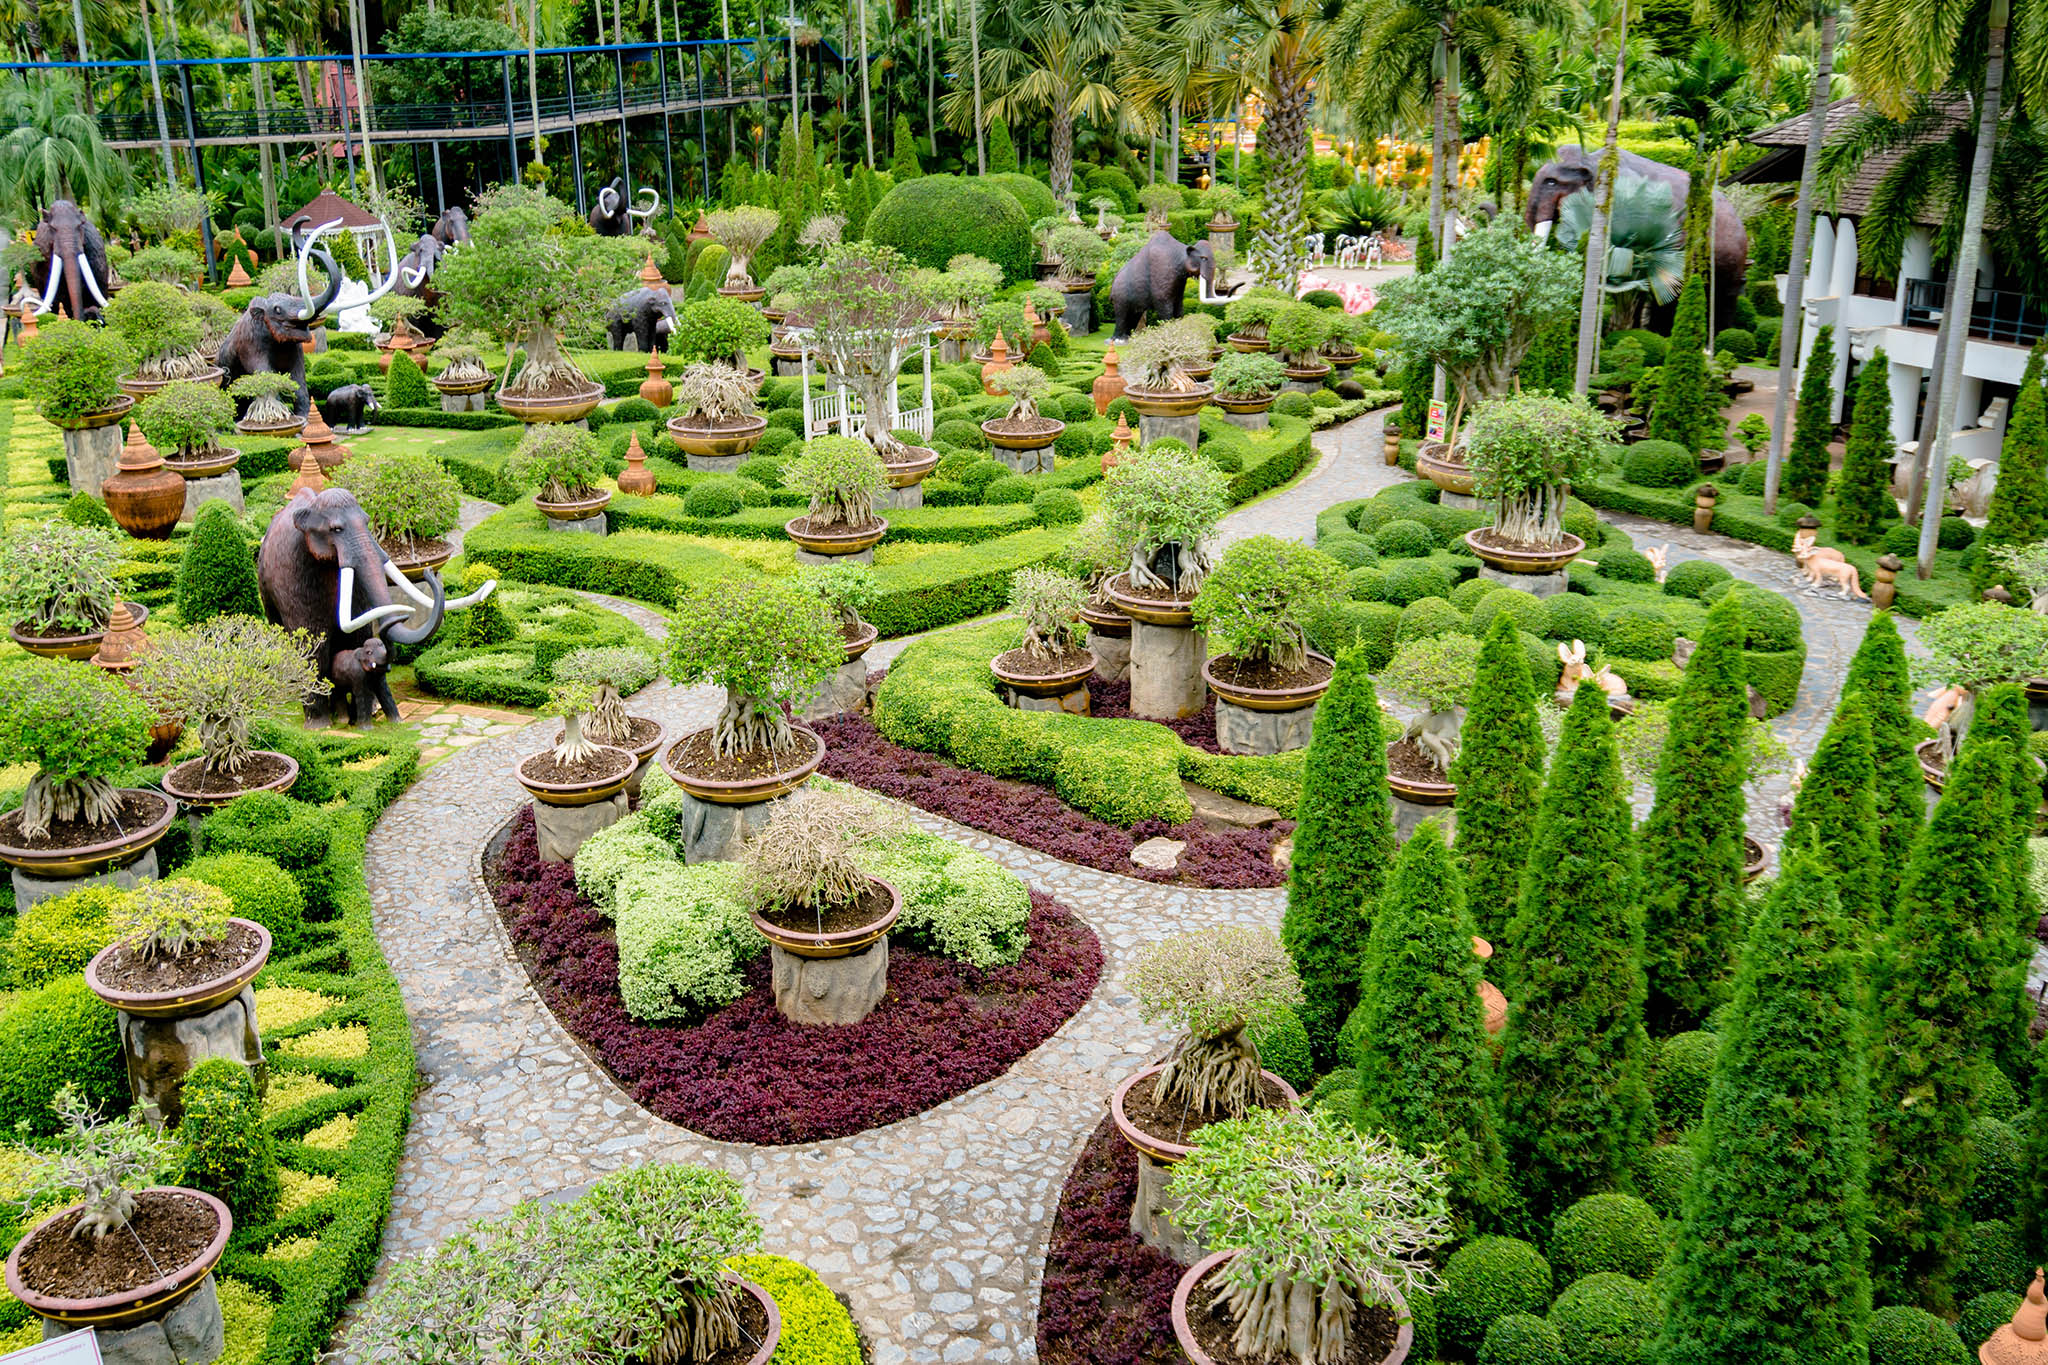 Te Gustaria Visitar Algunos De Los Jardines Mas Bellos Del Mundo